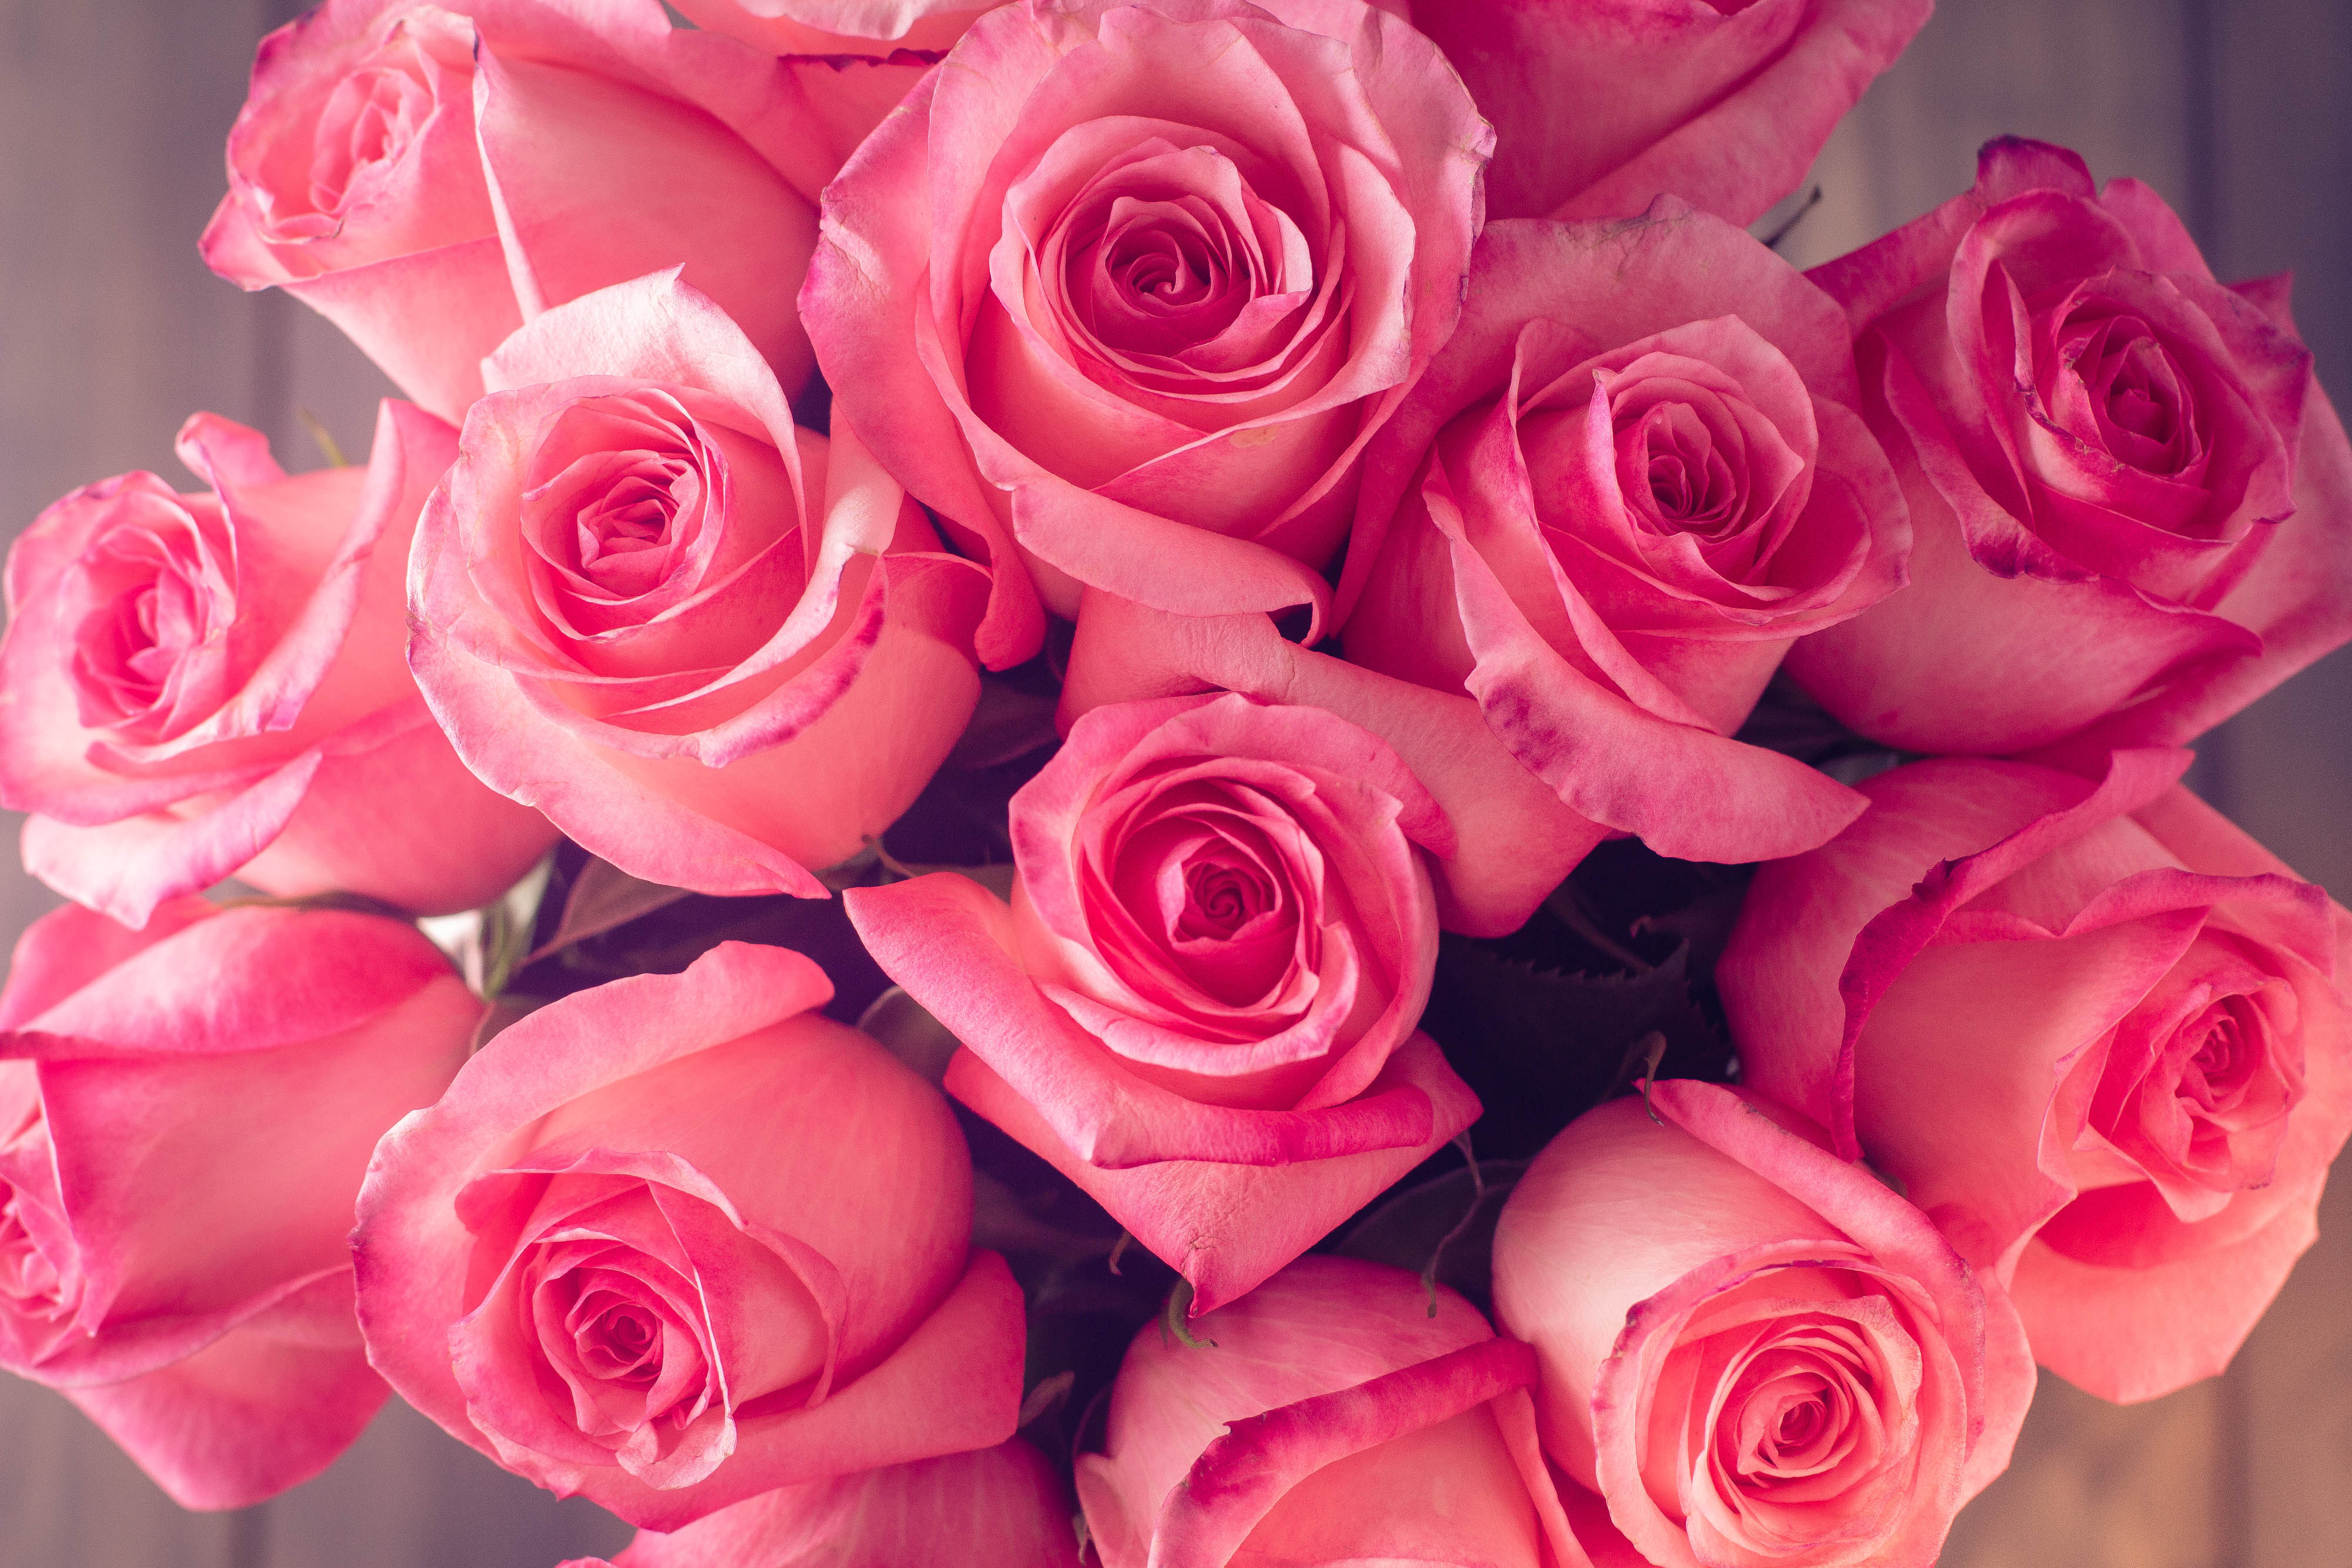 Видео красивых роз. Розовые розы. Розовая коза. Шикарные розовые розы. Красивый букет роз.